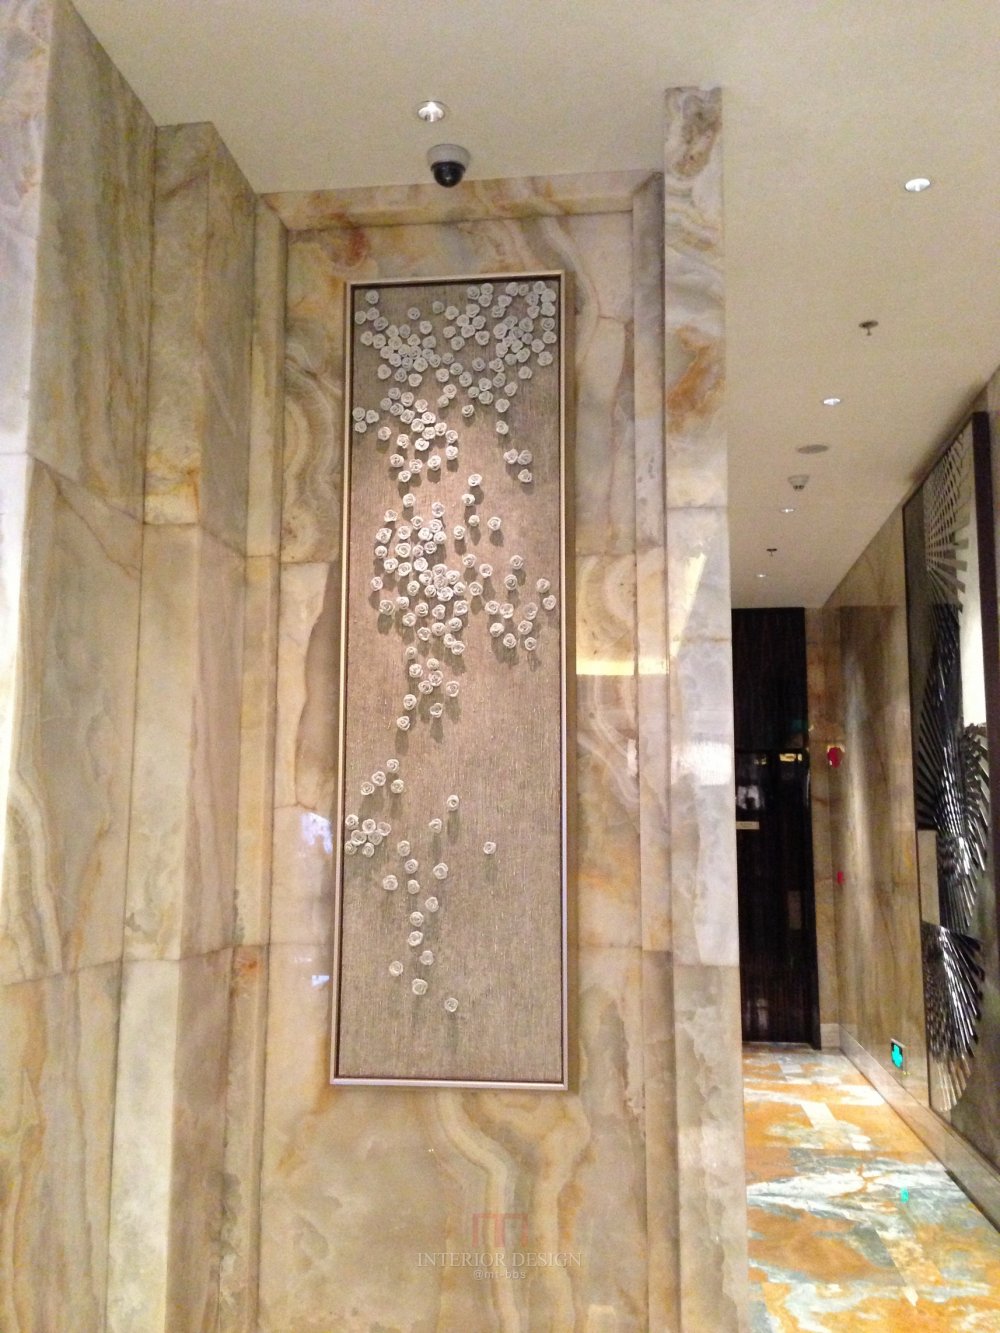 成都丽思卡尔顿酒店The Ritz-Carlton Chengdu(欢迎更新,高分奖励)_IMG_6387.JPG